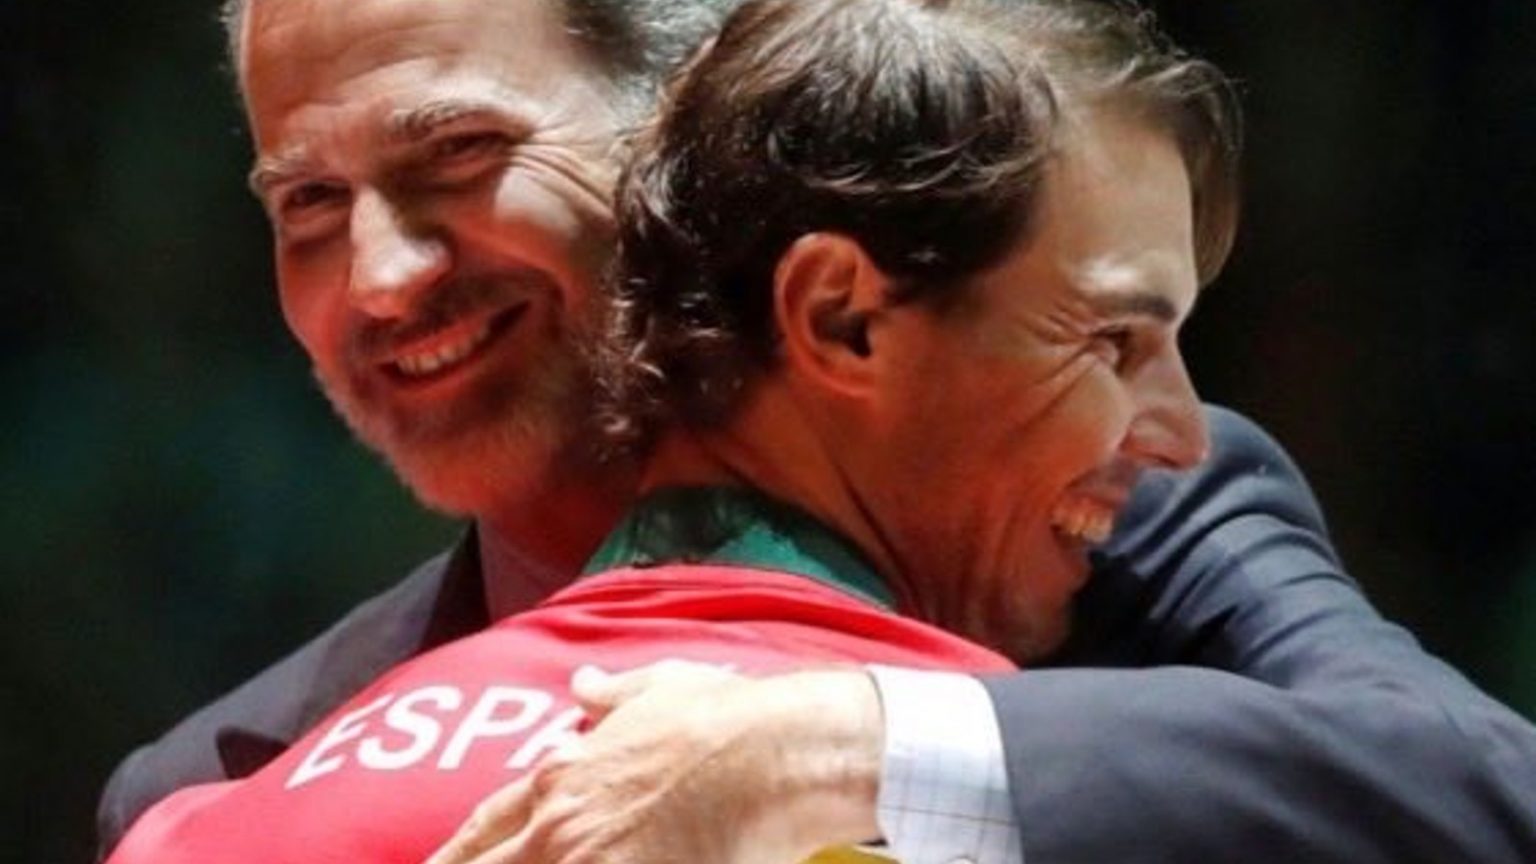 La ocurrente felicitación de Casa Real a Rafa Nadal tras volver a hacer historia en el tenis